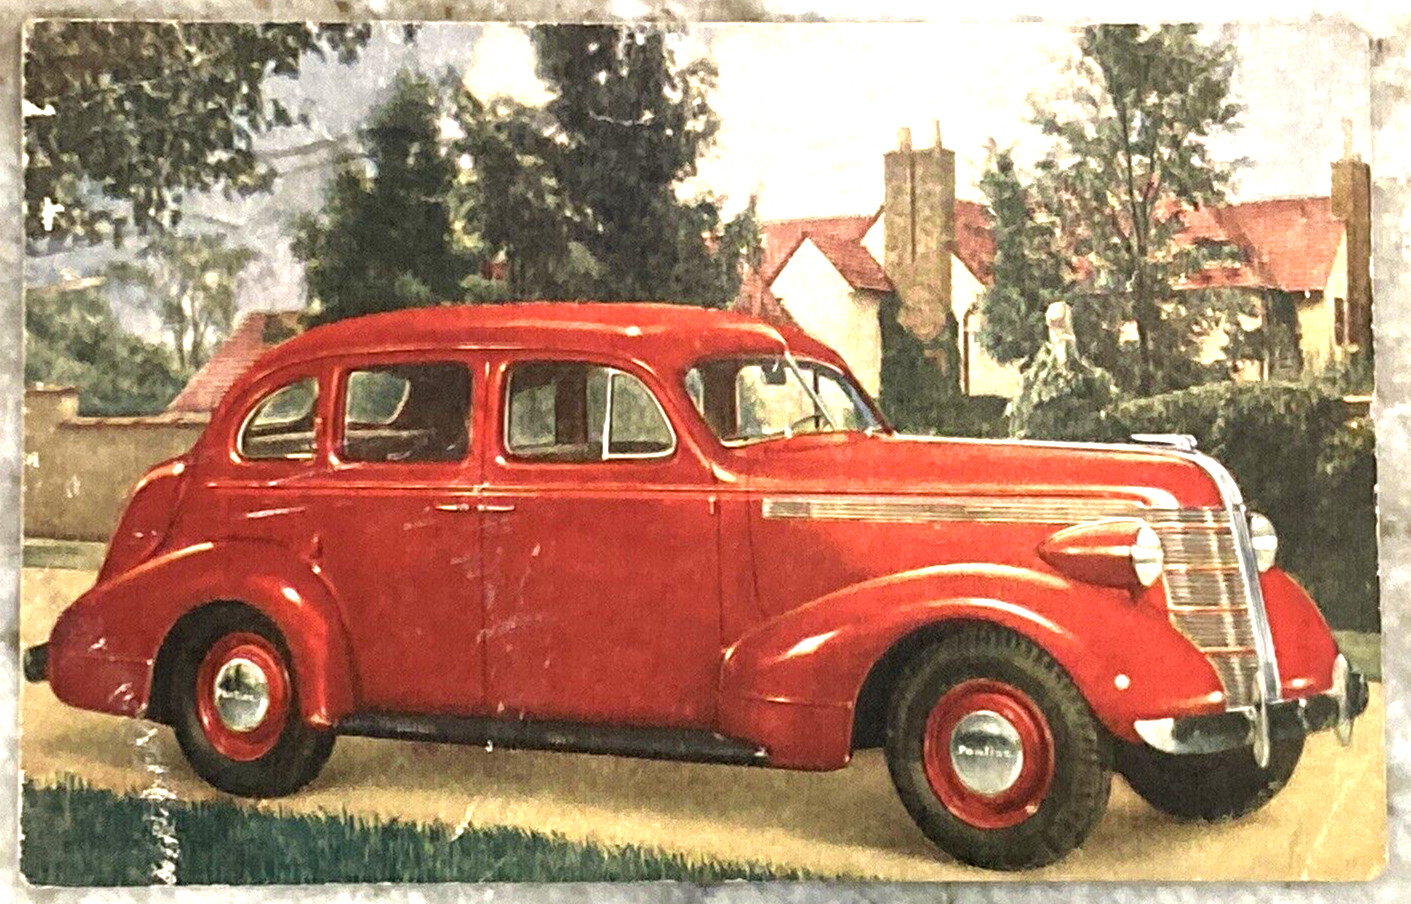 1937 SILVER STREAK PONTIAC Red Coupe PM Royal Oak MI 1939 Postcard 3025